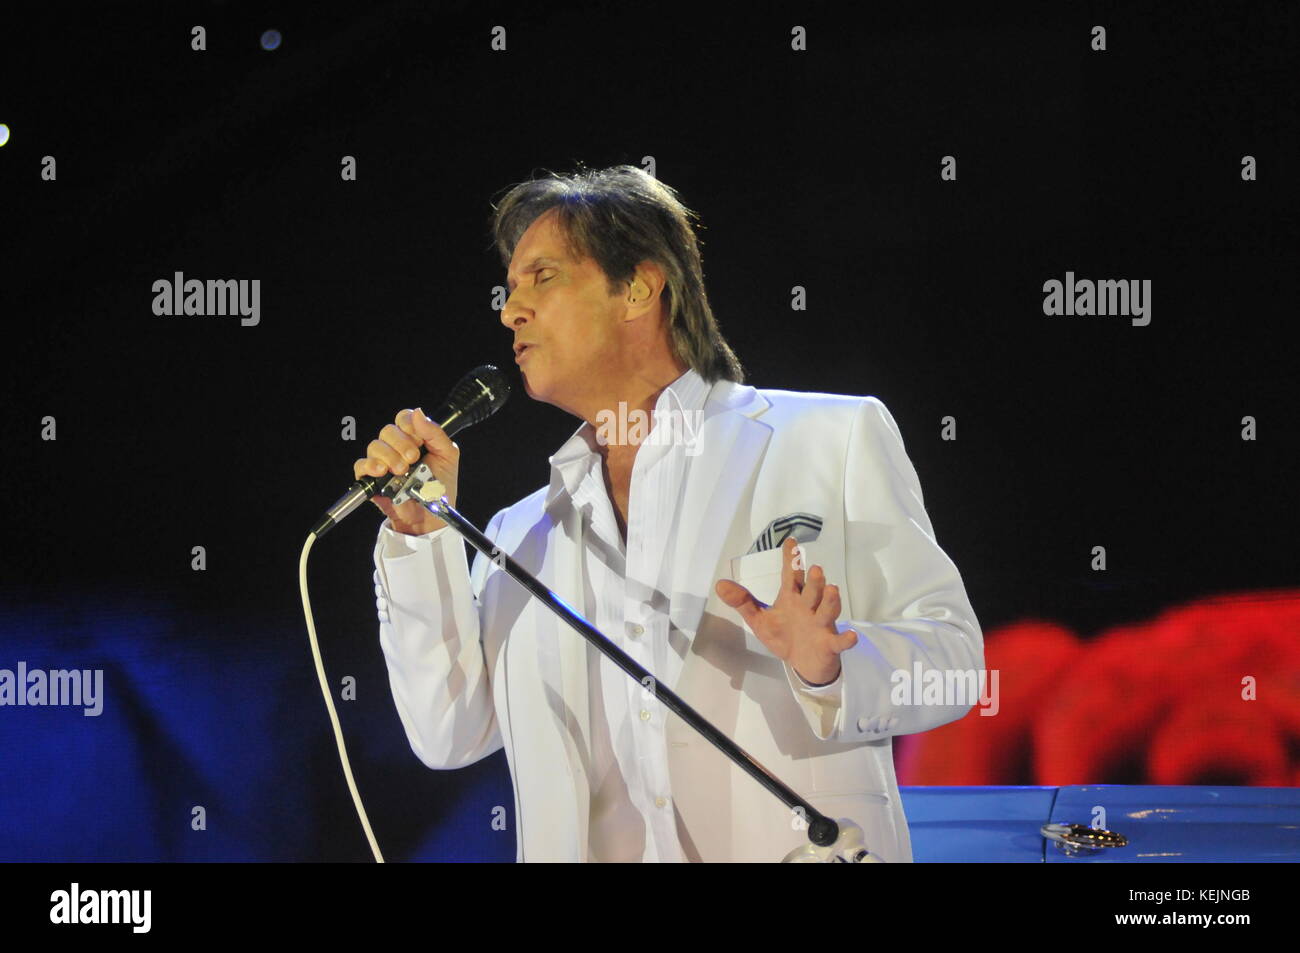 Rio de Janeiro-Brazil, 20 décembre 2013 concert ROBERTO CARLOS (célèbre chanteur brésilien) à l'HSBC Arena de Rio de Janeiro Banque D'Images